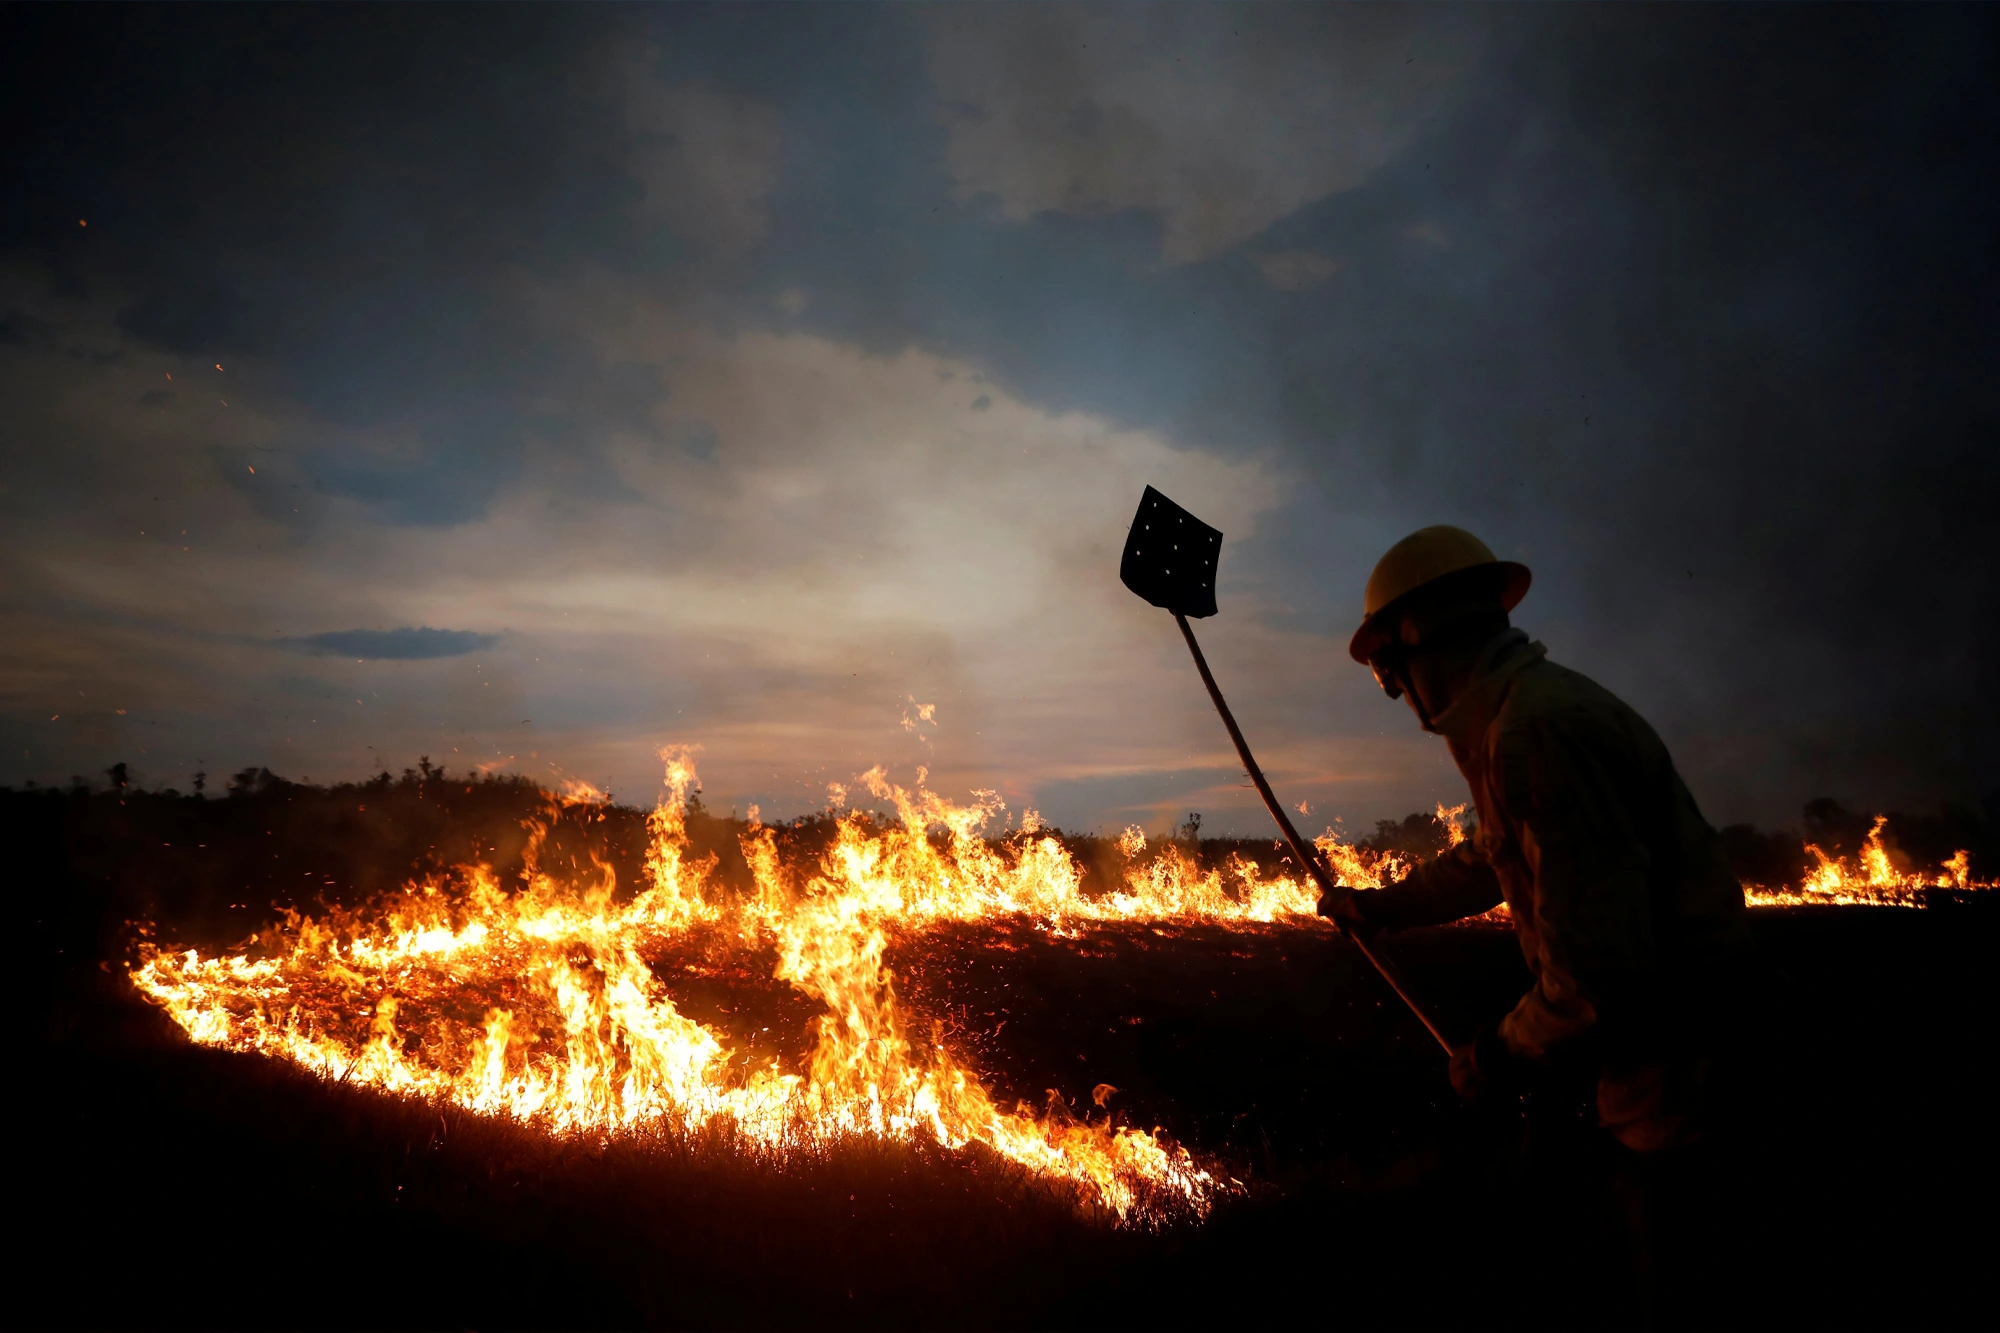 As brigadas indígenas utilizam um amplo conhecimento do território para combater os incêndios florestais. — Foto: Bruno Kelly/Reuters.